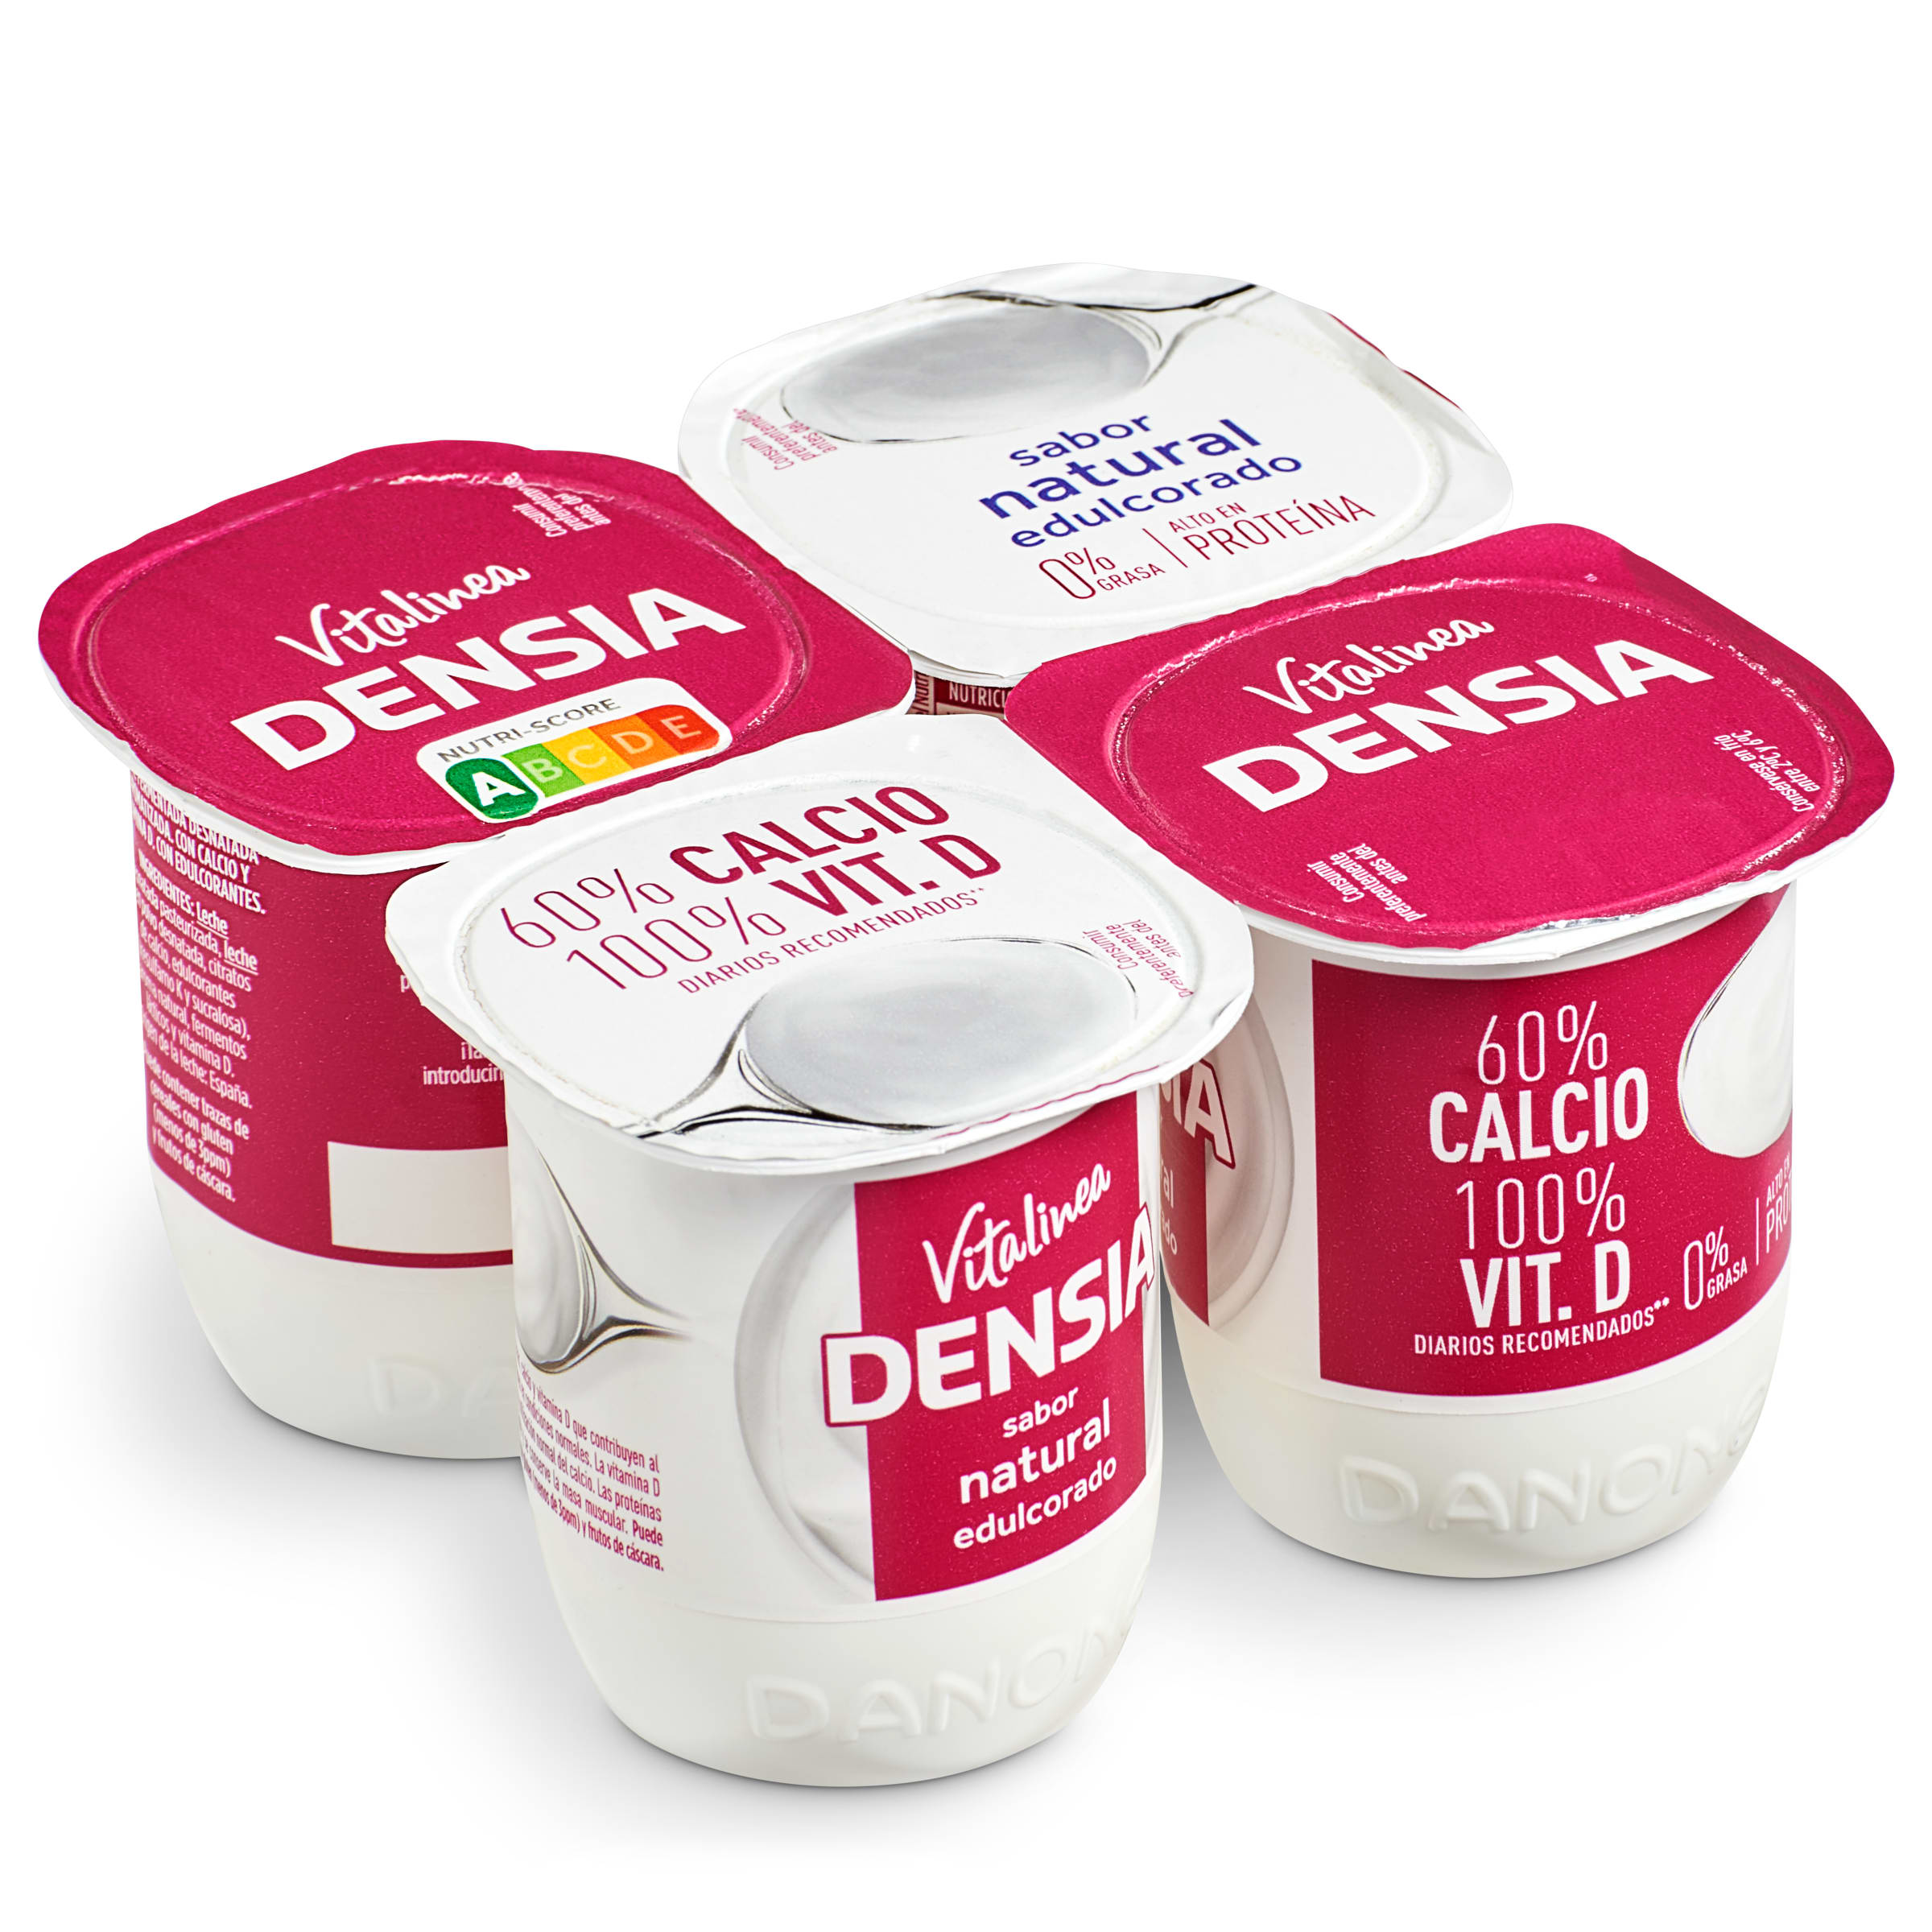 Yogur activia edulcorado 0% pack 4 x 120g danone